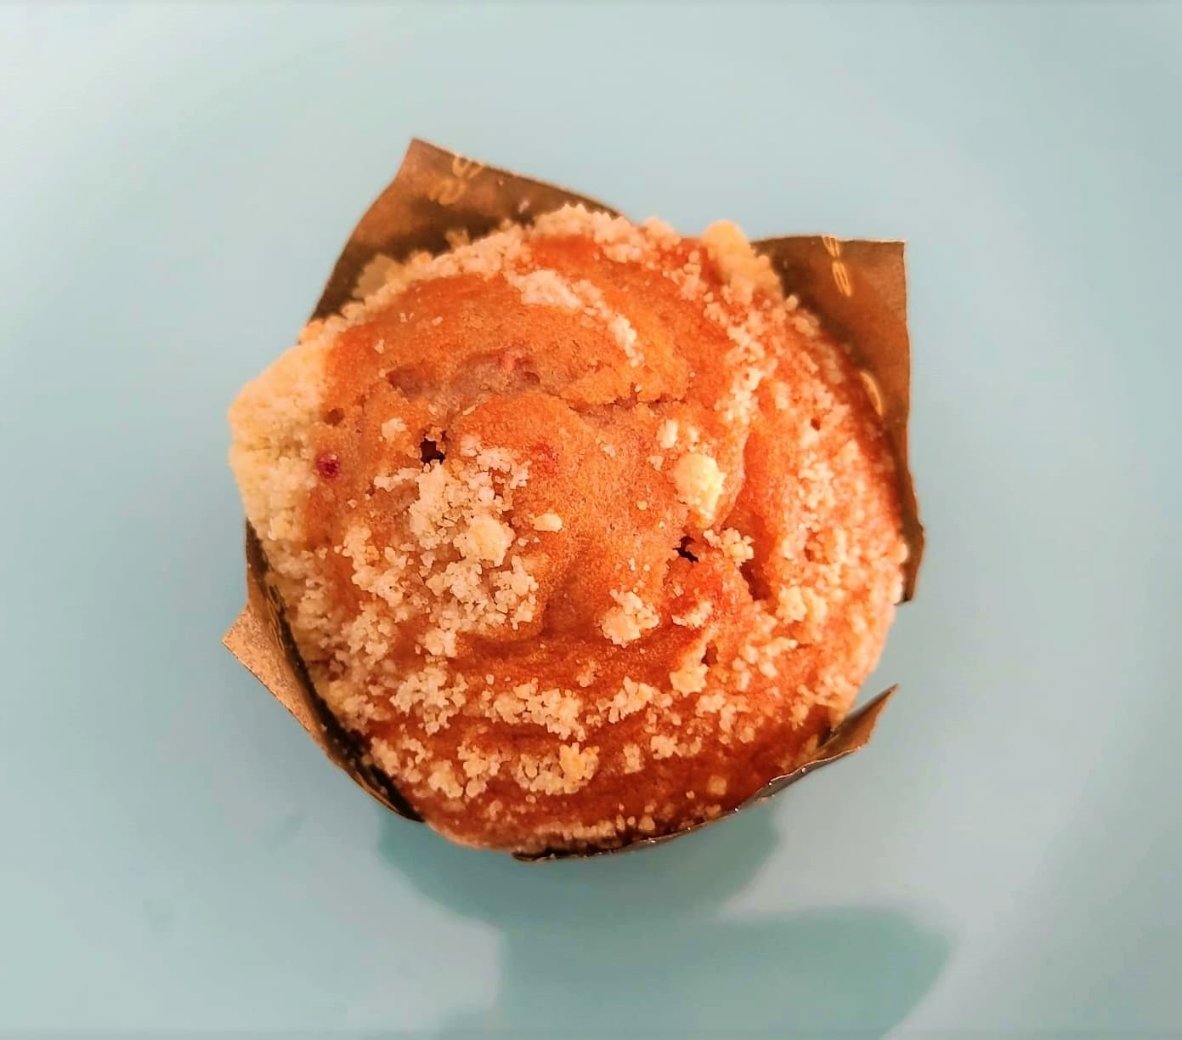 muffin-sabor-cheesecake-desayuno-a-domicilio.jpg